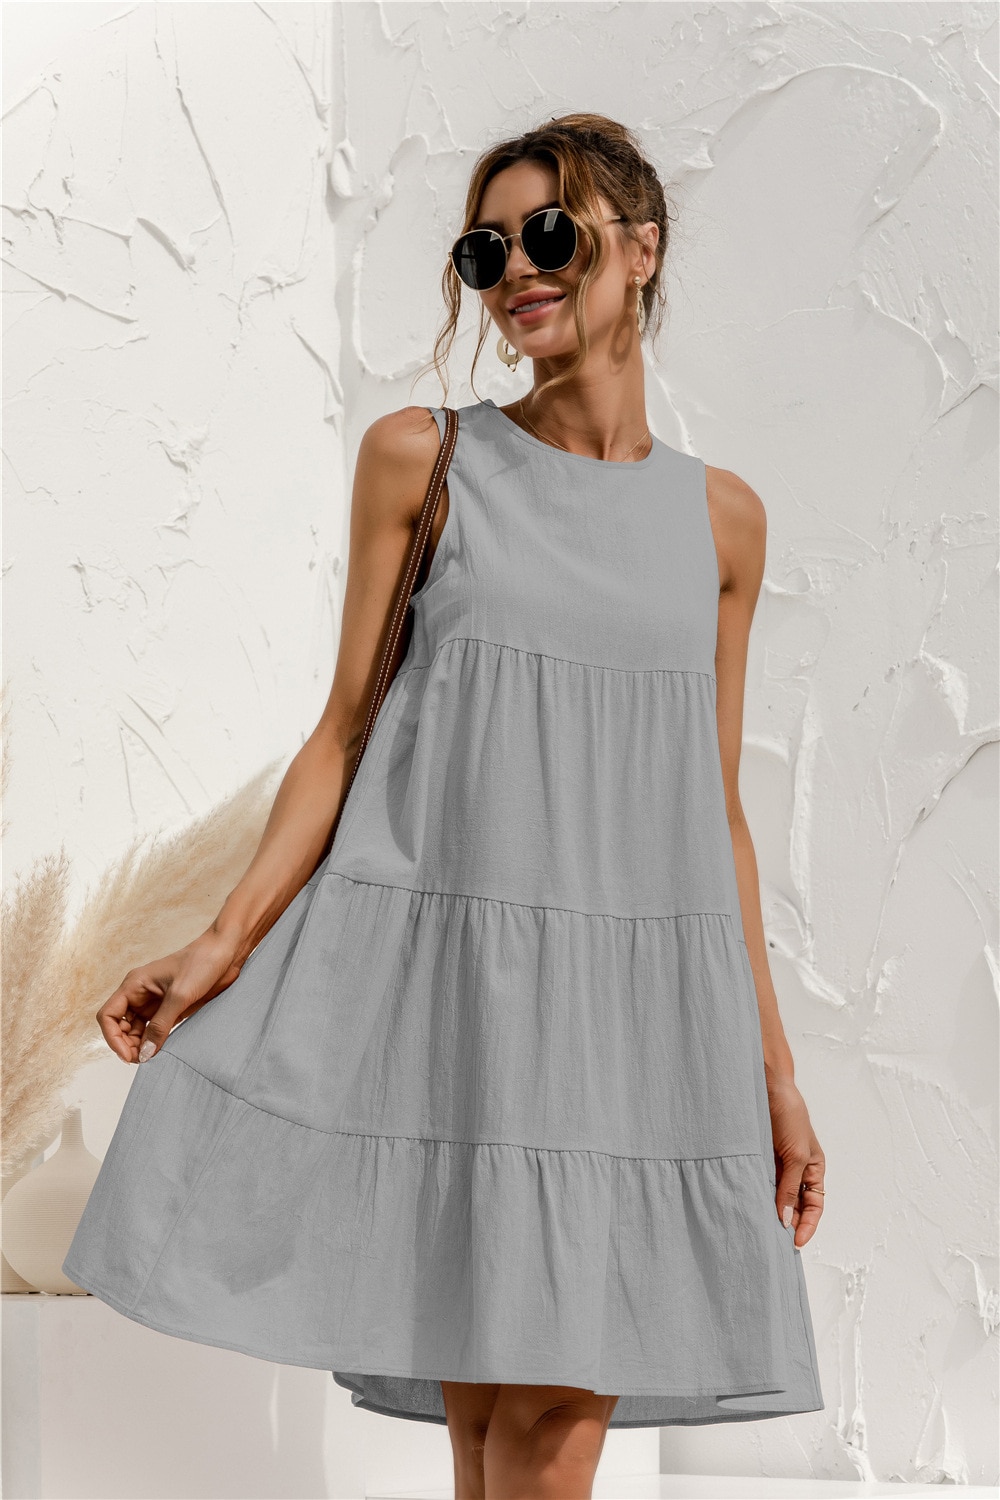 Women's Summer Sleeveless O-Neck Dress